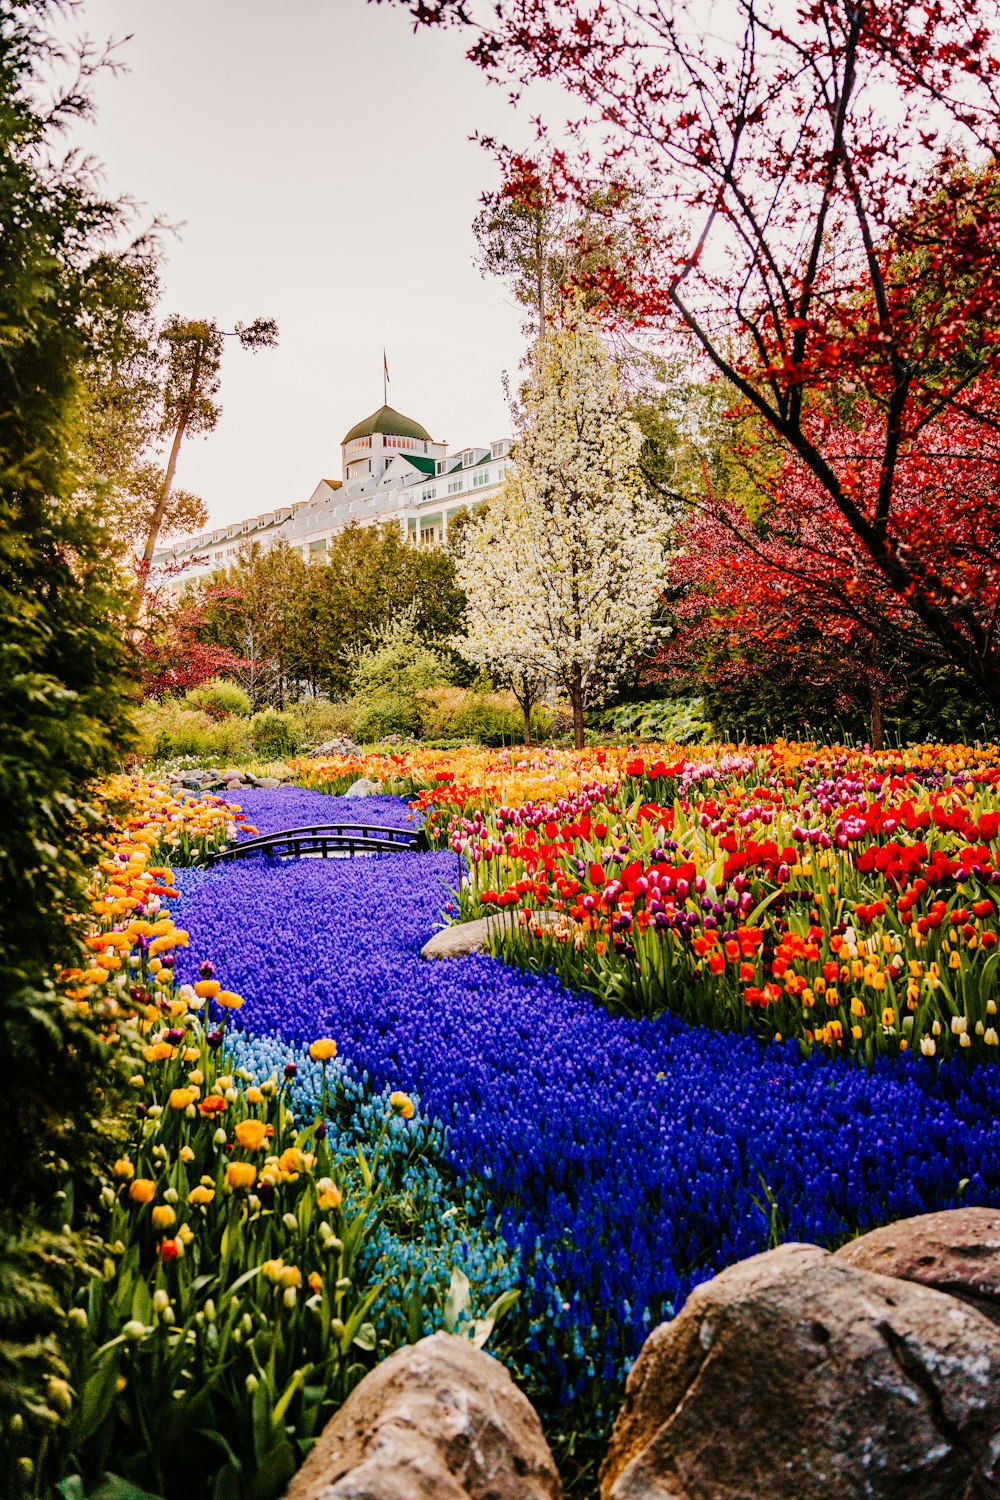 Un colorido jardín con muchas flores y árboles